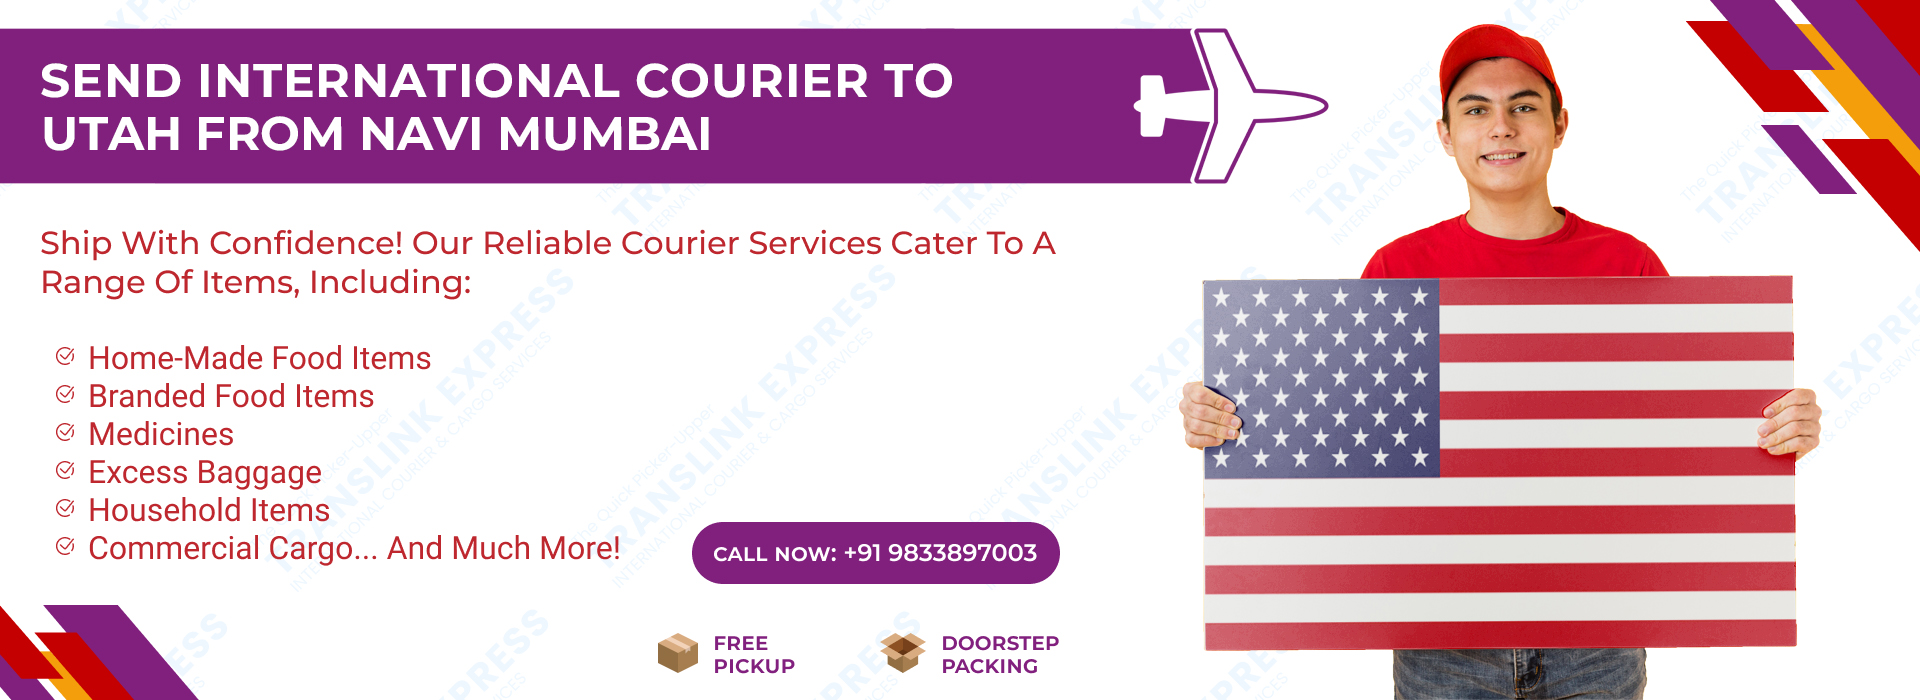 Courier to Utah From Navi Mumbai